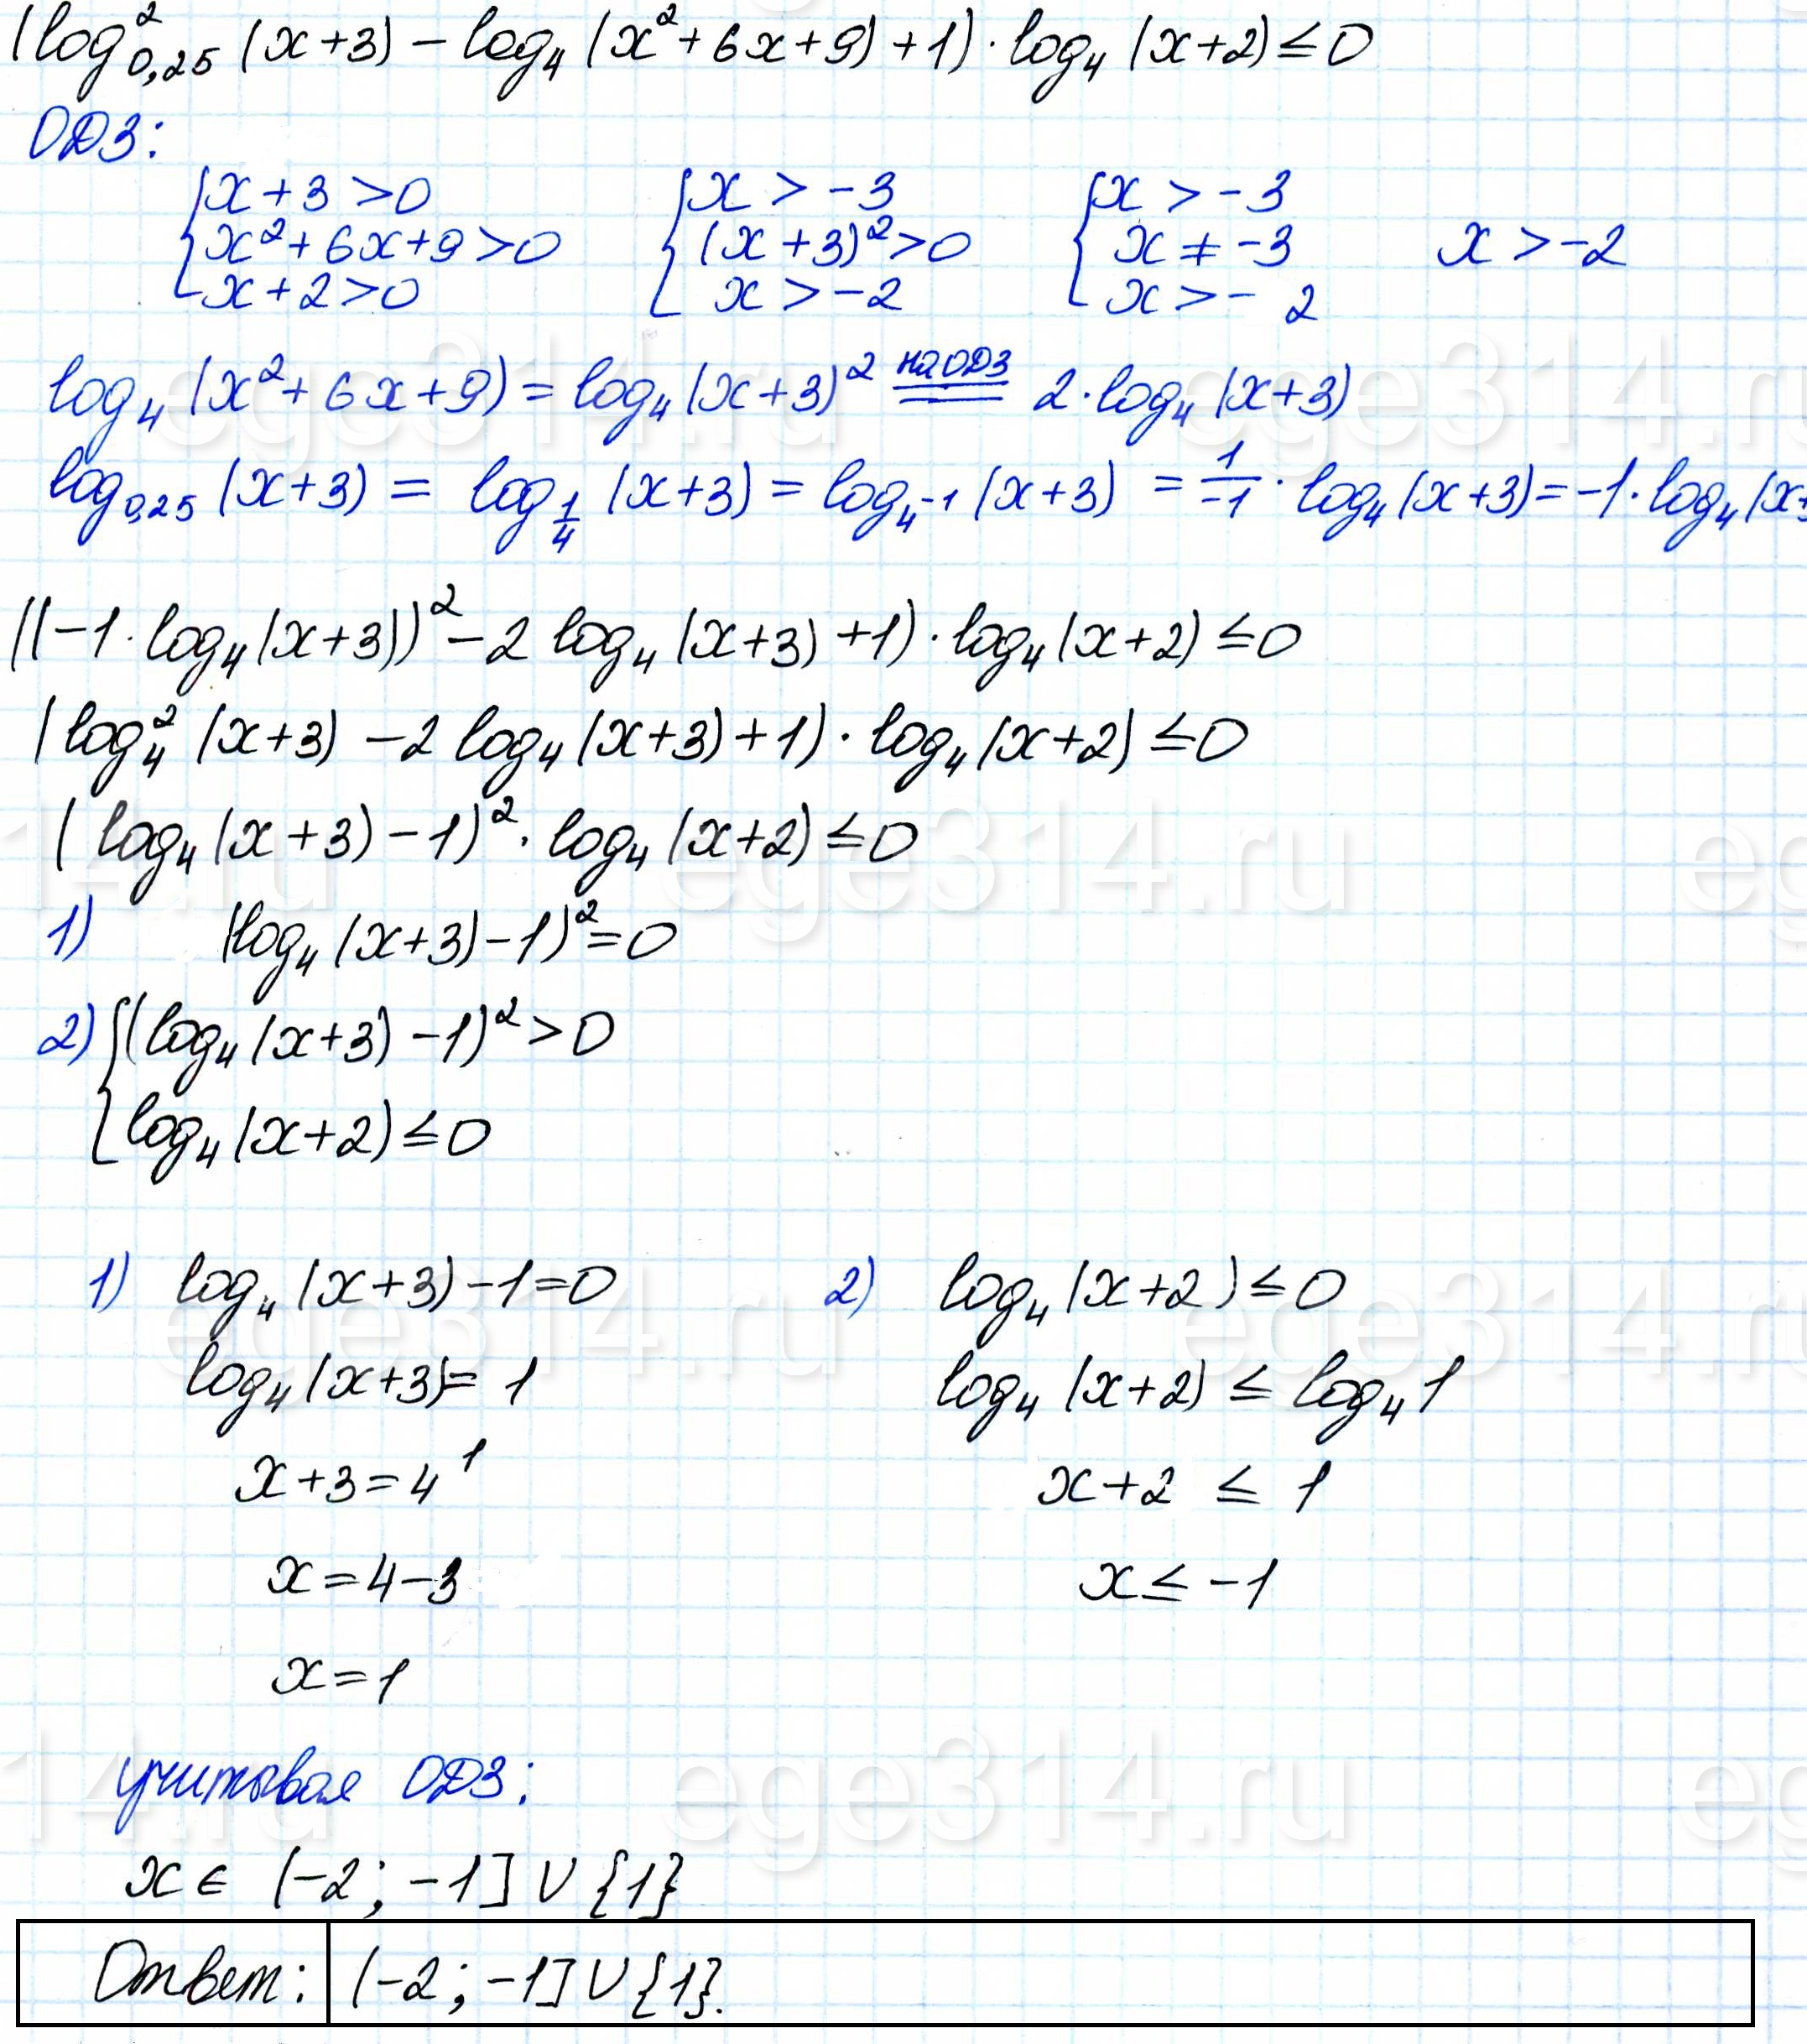 Решите неравенство ((log0,25 (x+3))^2-log4 (x^2+6x+9)+1)*log4(x+2)<=0.